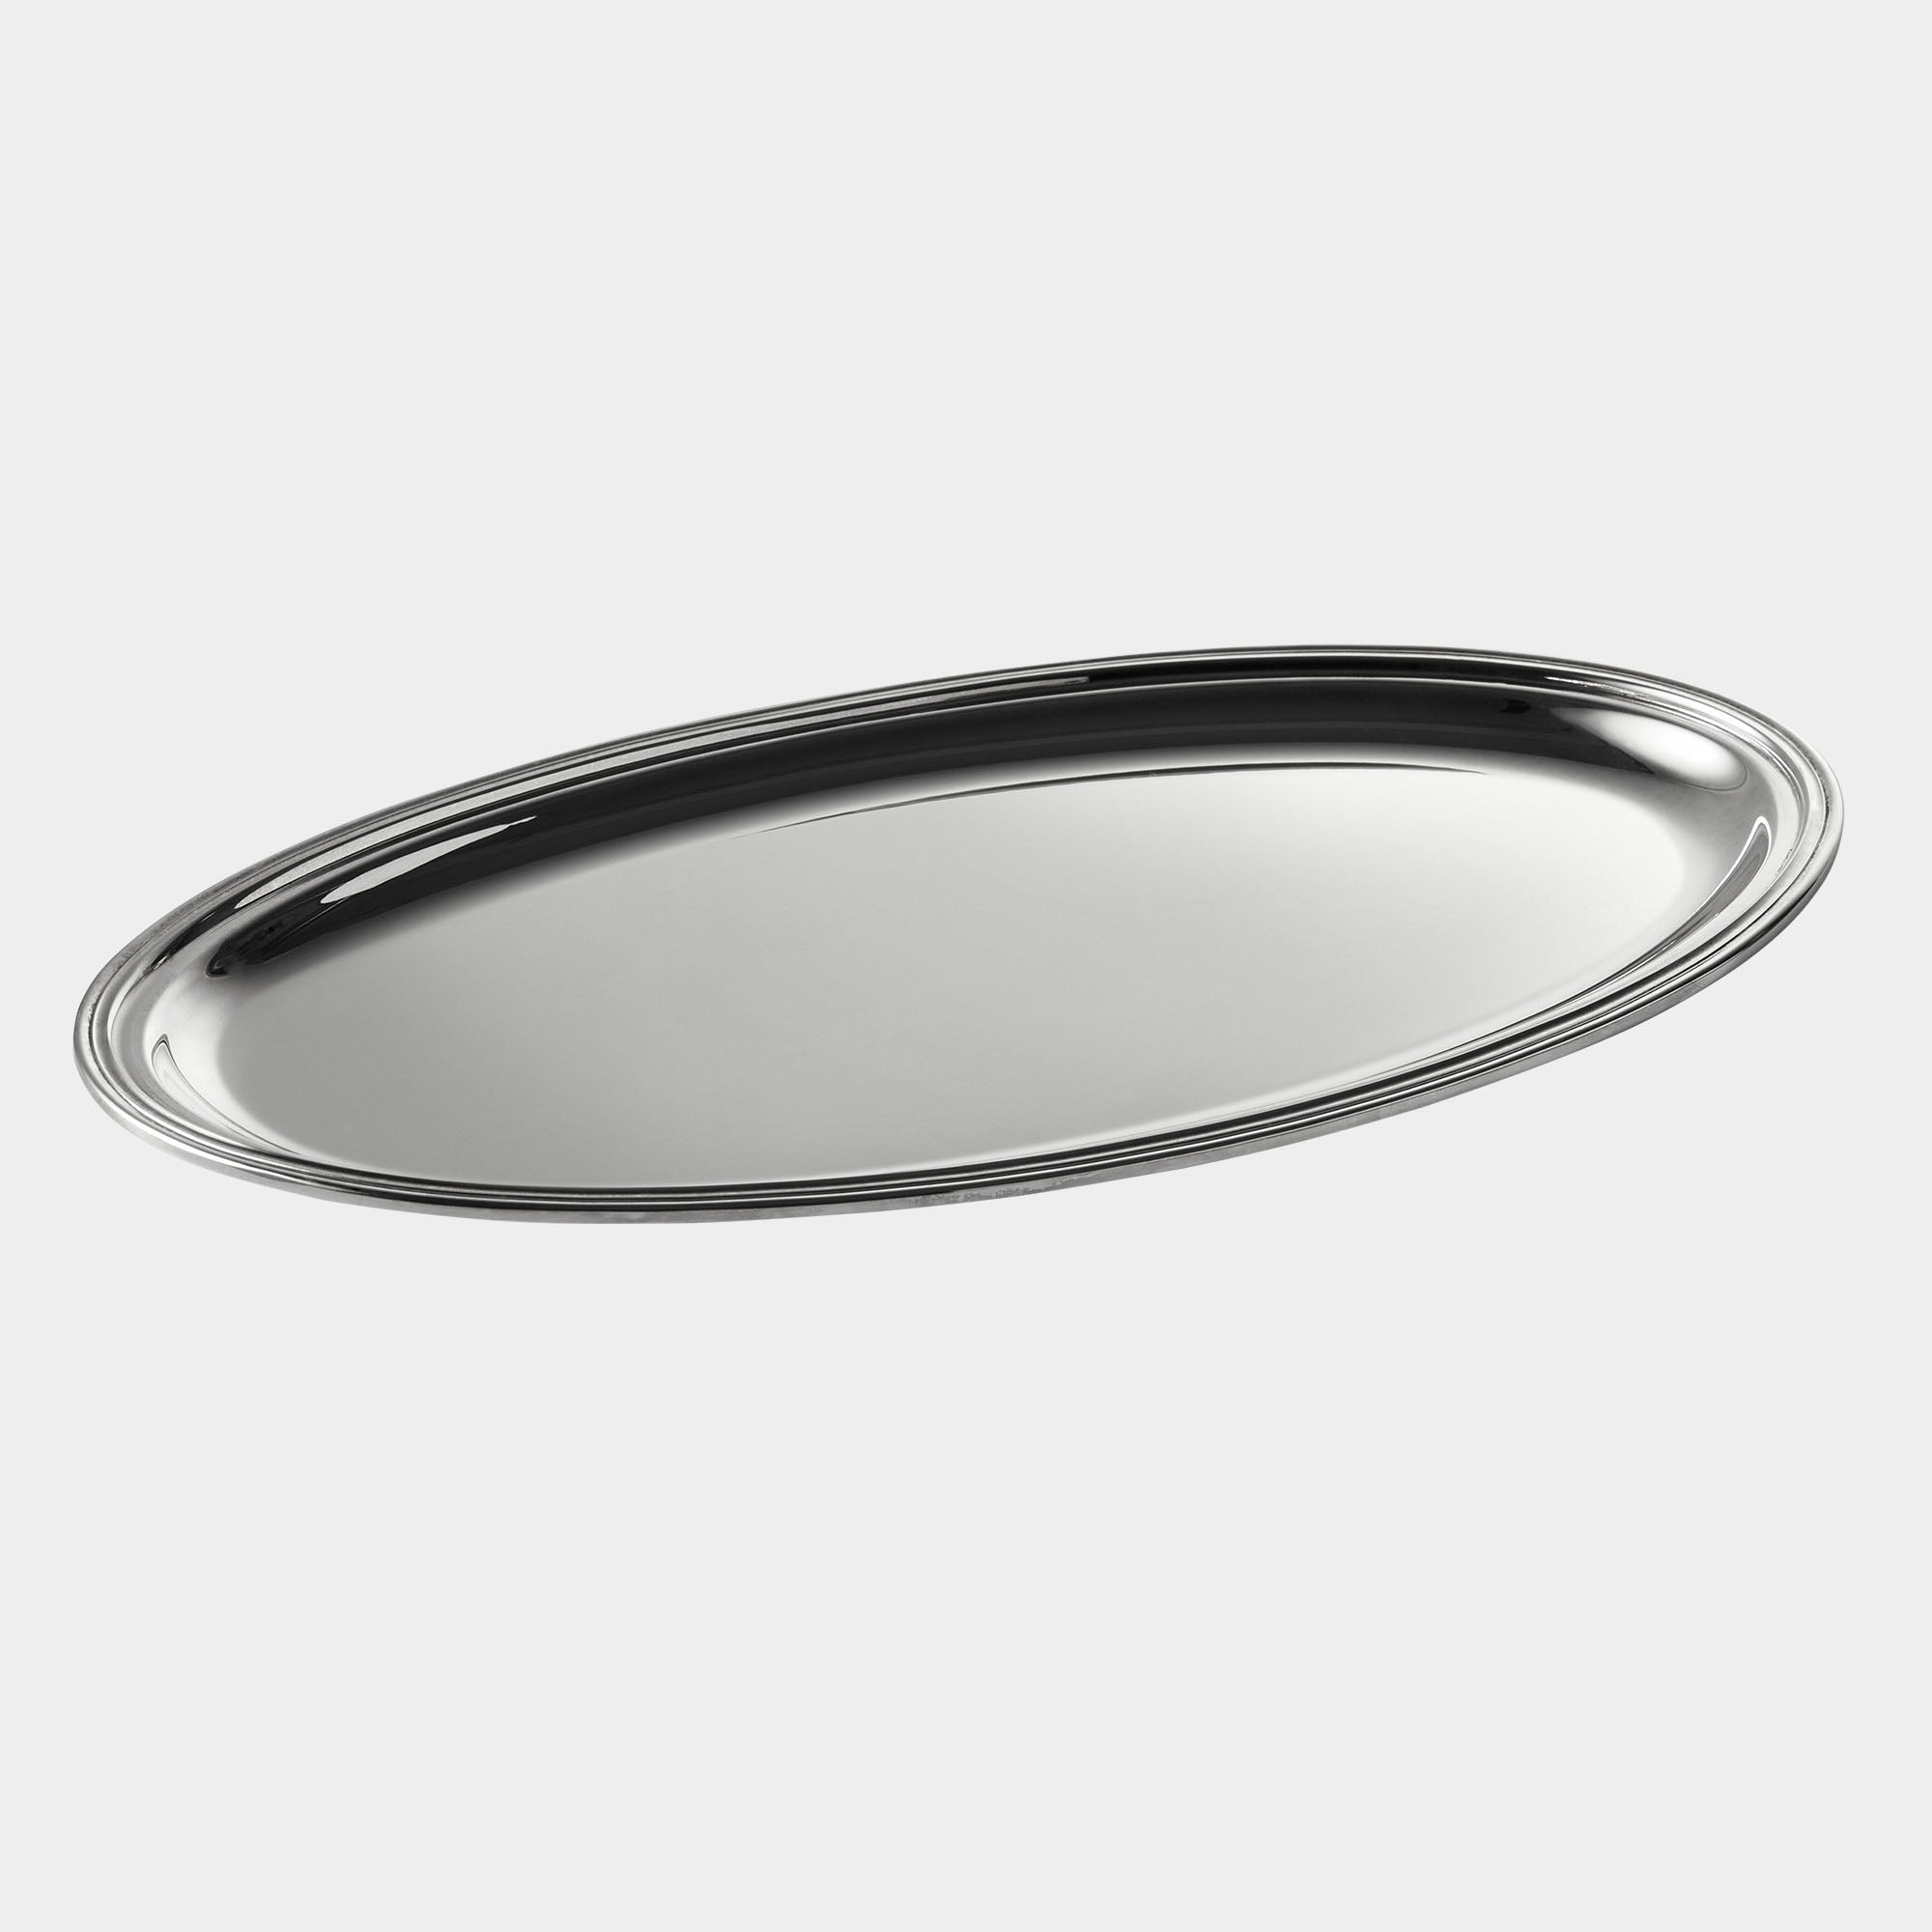 Ovales Echtsilber-Tablett mit aufgelegtem Rillenrand - Bild 1